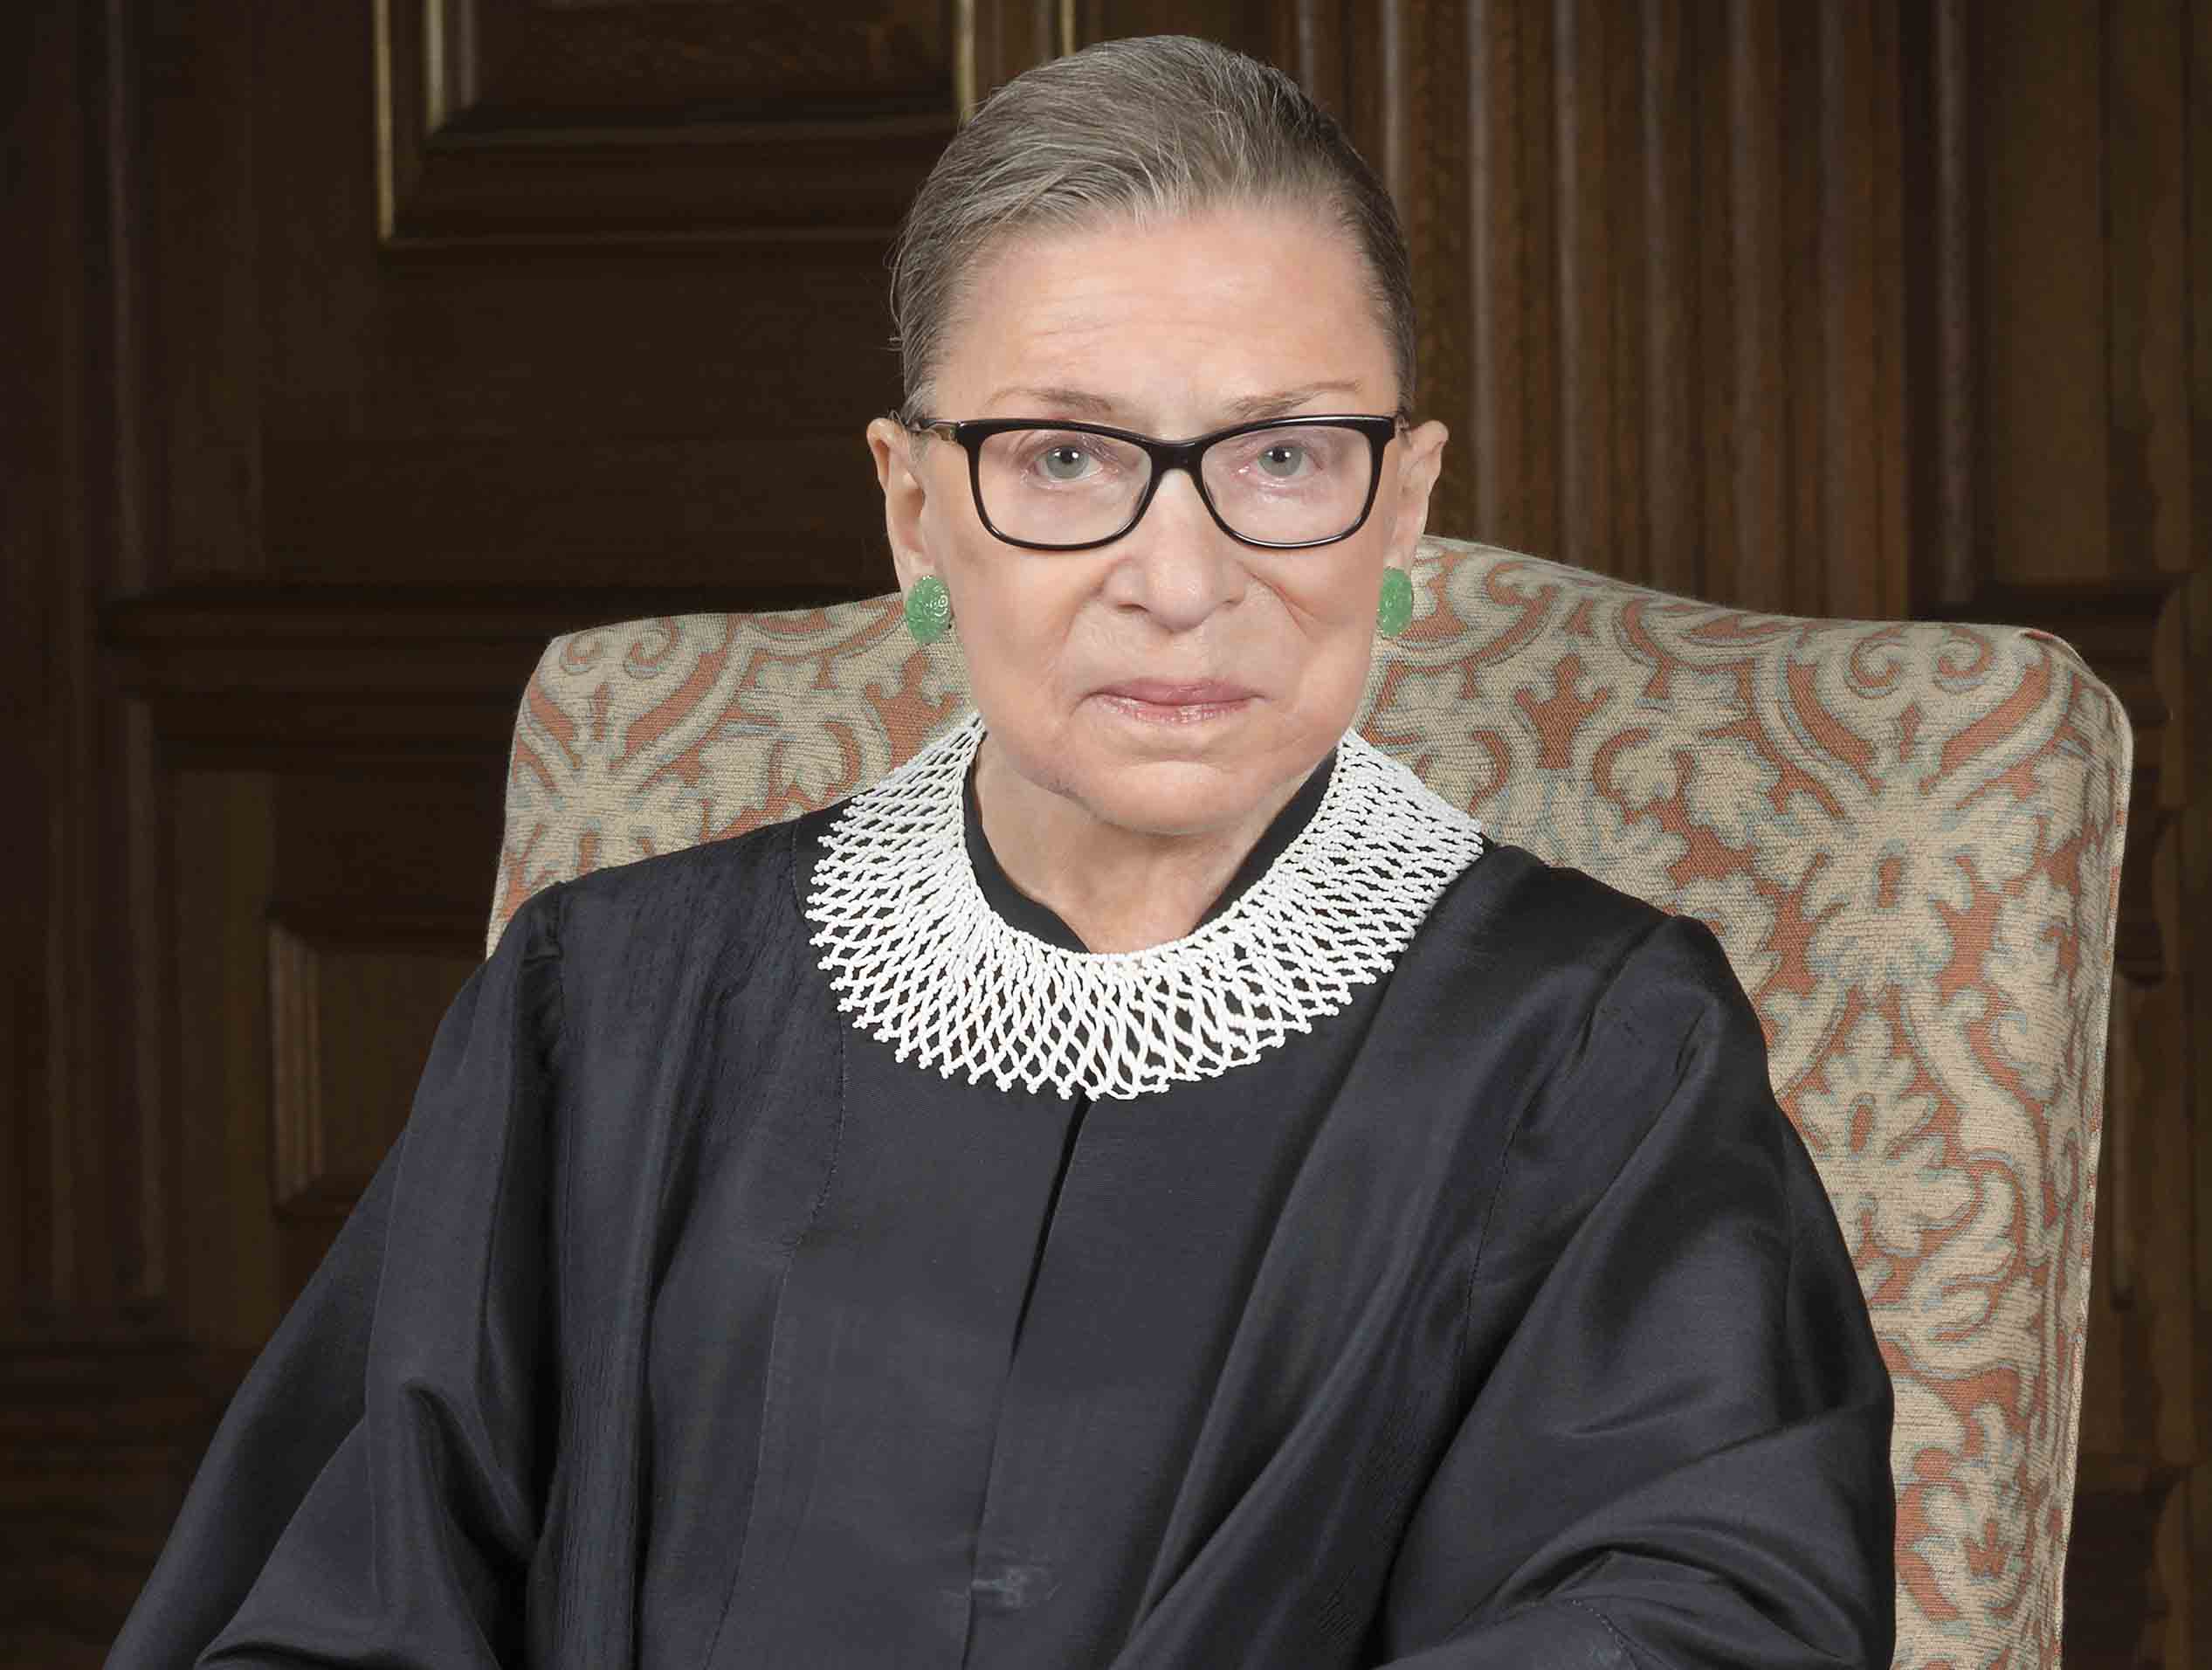 Opinión | Así entendía la jueza Ruth Bader Ginsburg la independencia judicial